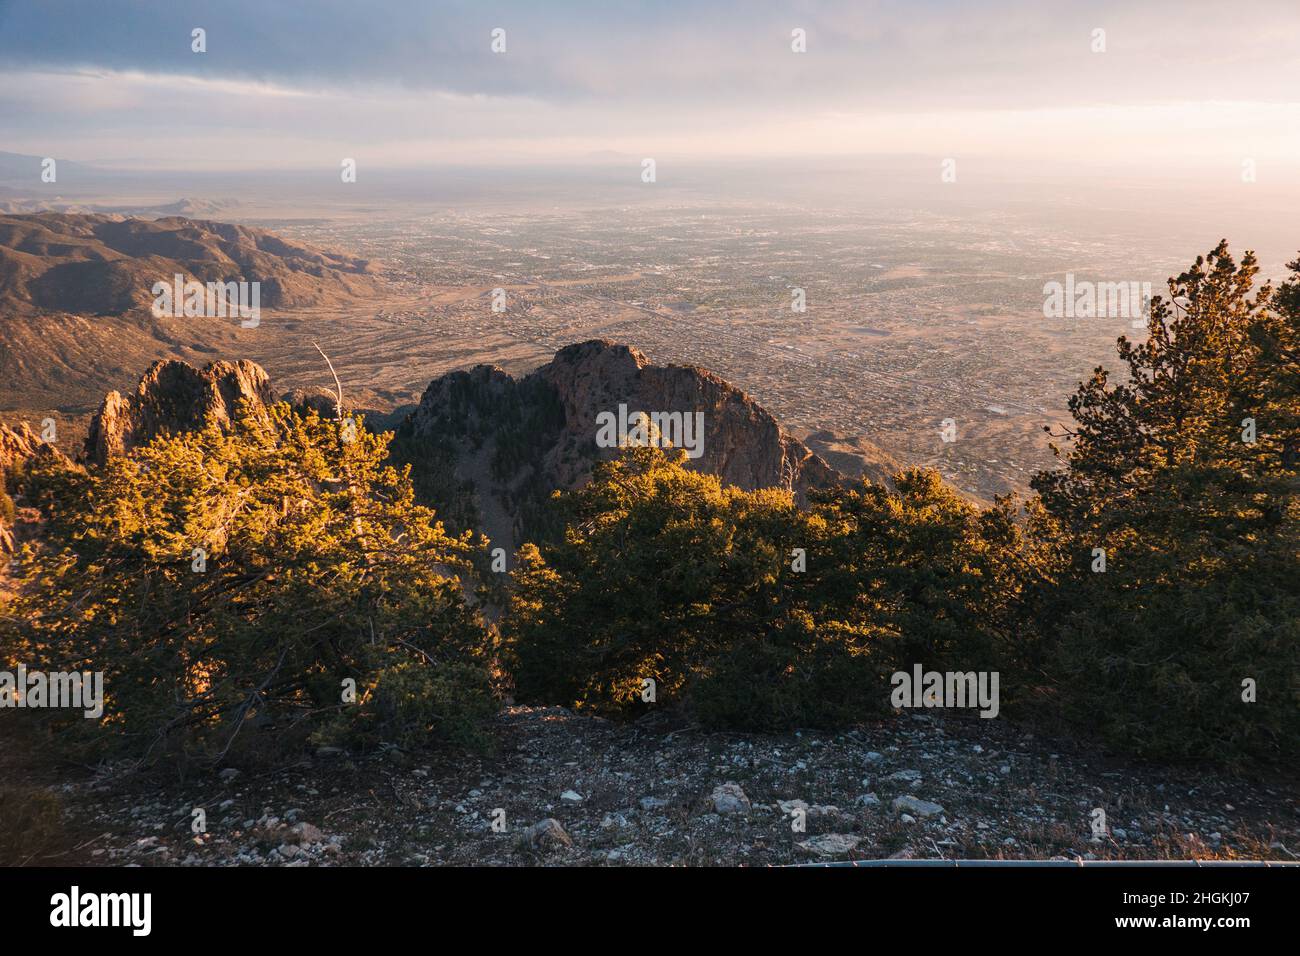 La ciudad de Albuquerque, Nuevo México, vista desde la cima de las montañas Sandia al atardecer Foto de stock